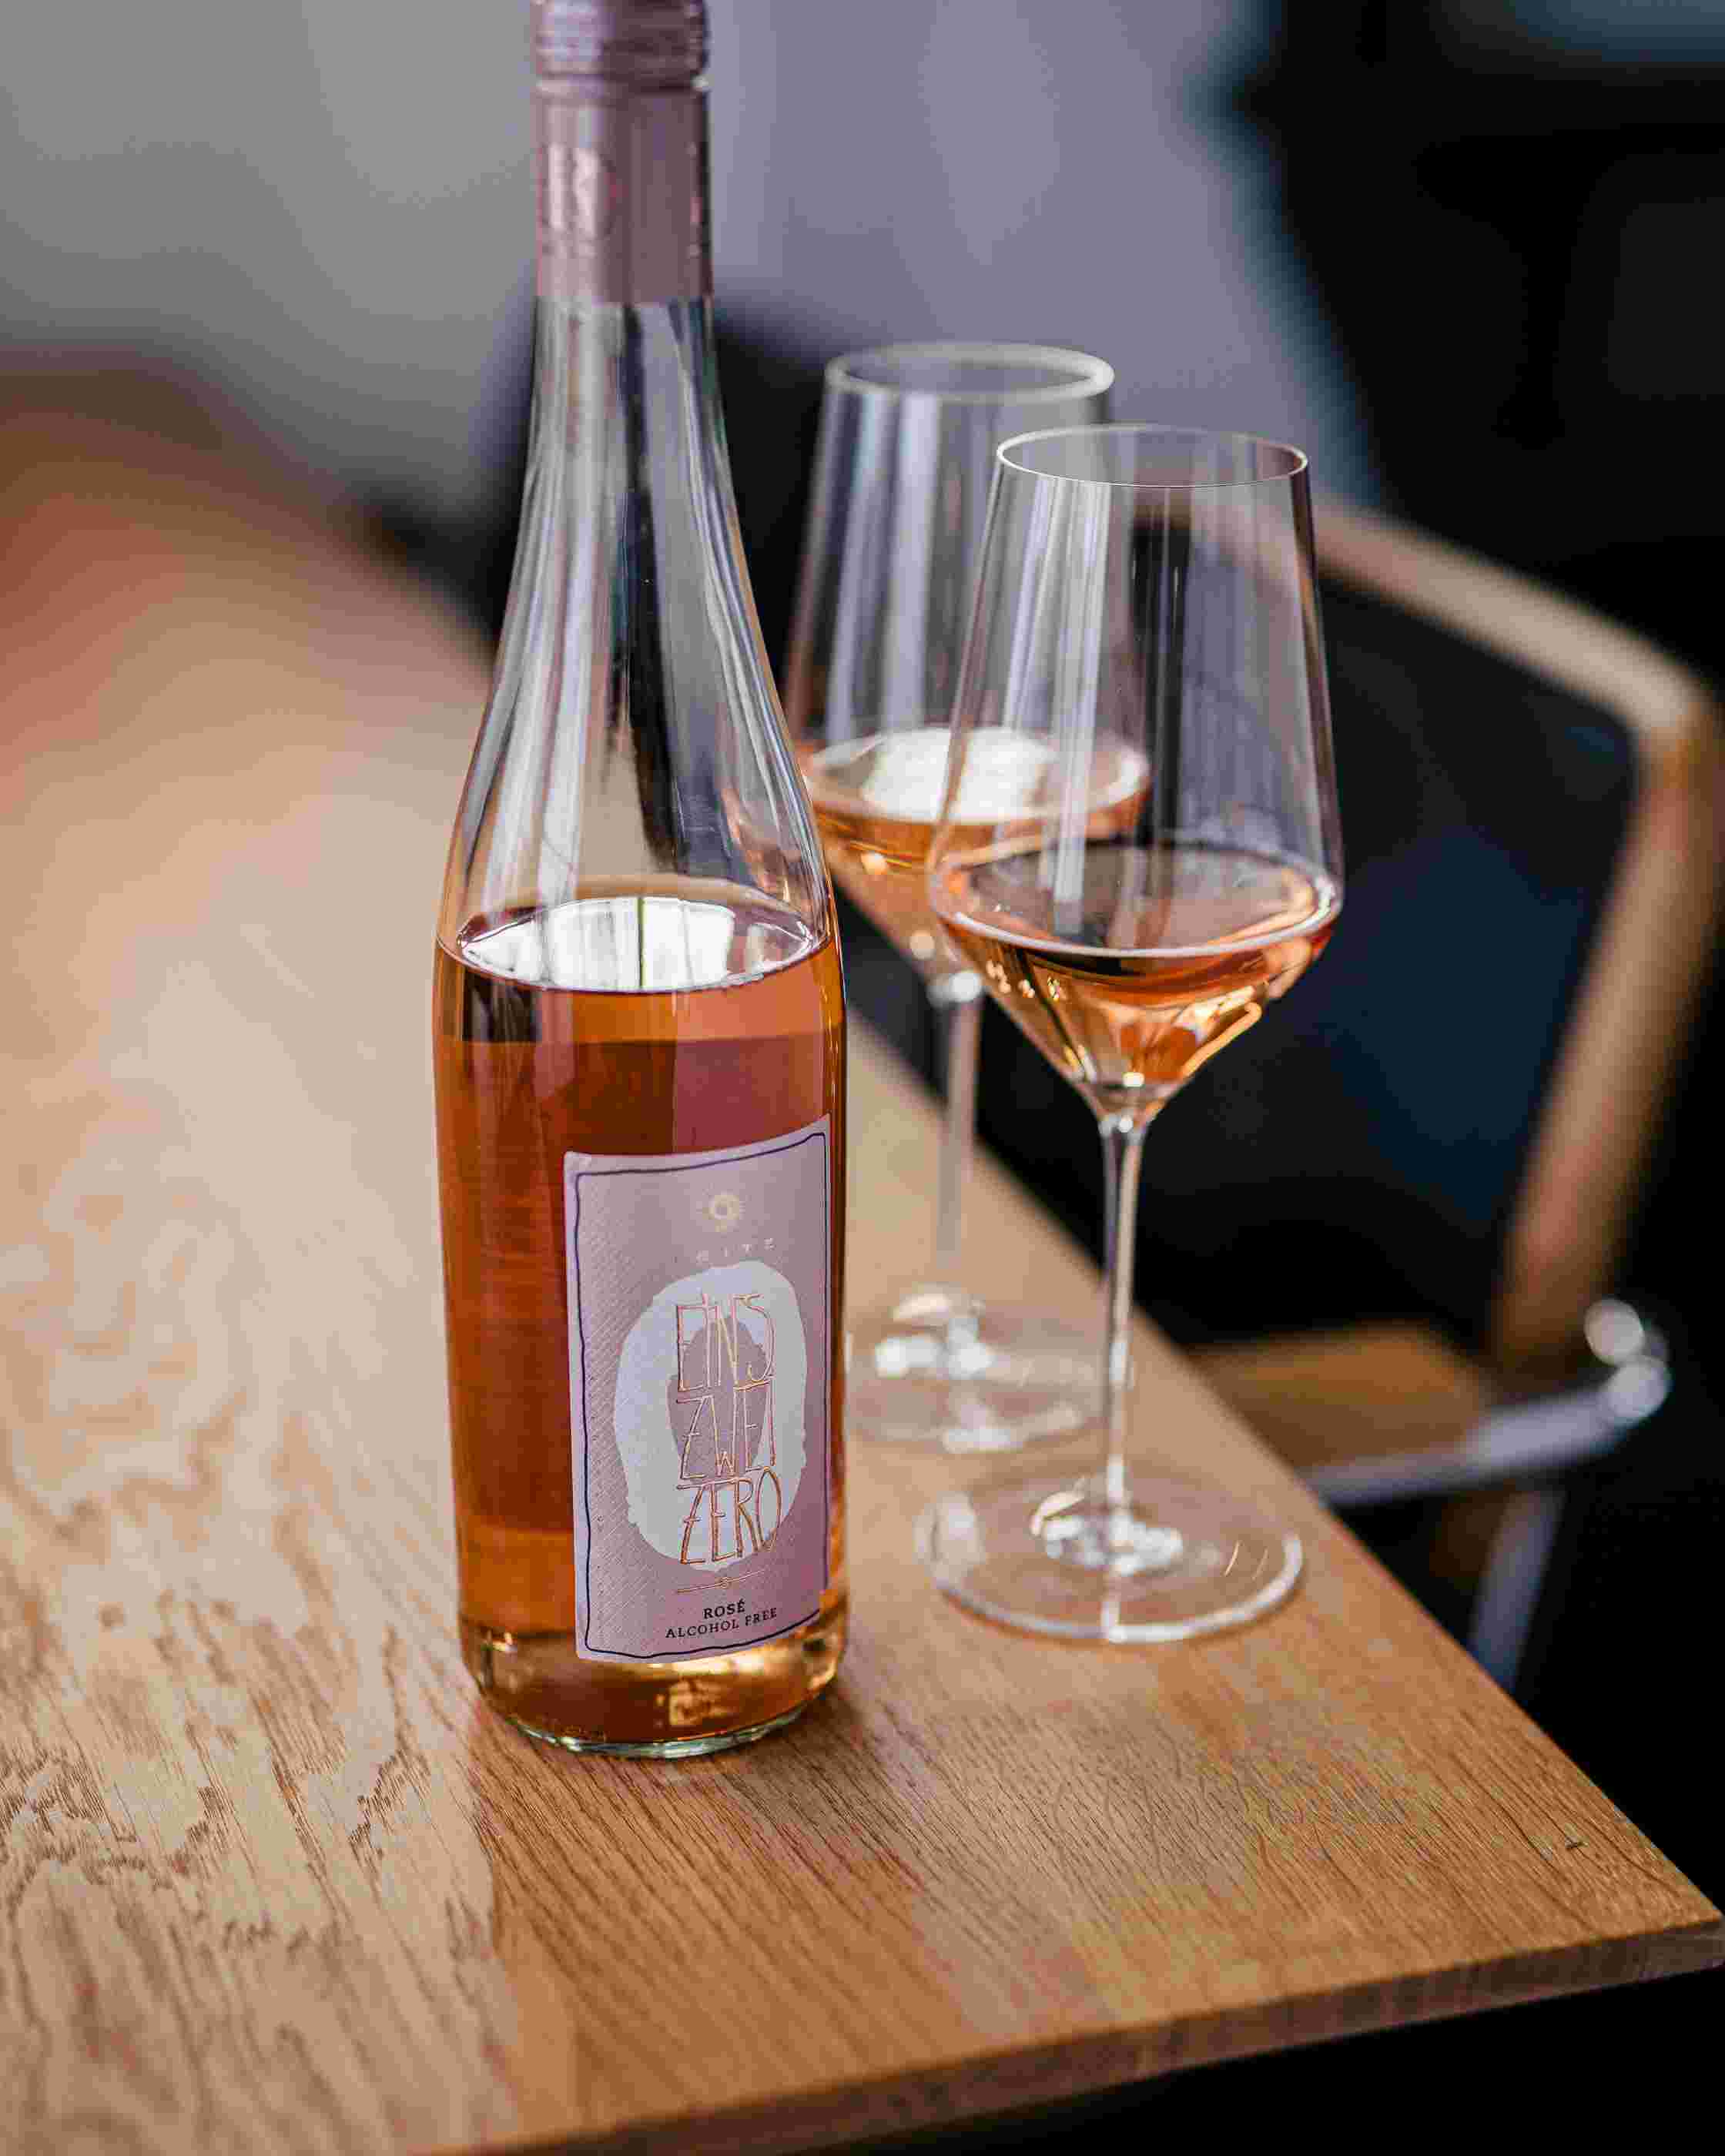 Sfeerfoto Leitz Eins-Zwei-Zero Rosé. De fles staat op een houten tafel. Naast de fles staan twee gevulde wijnglazen. 